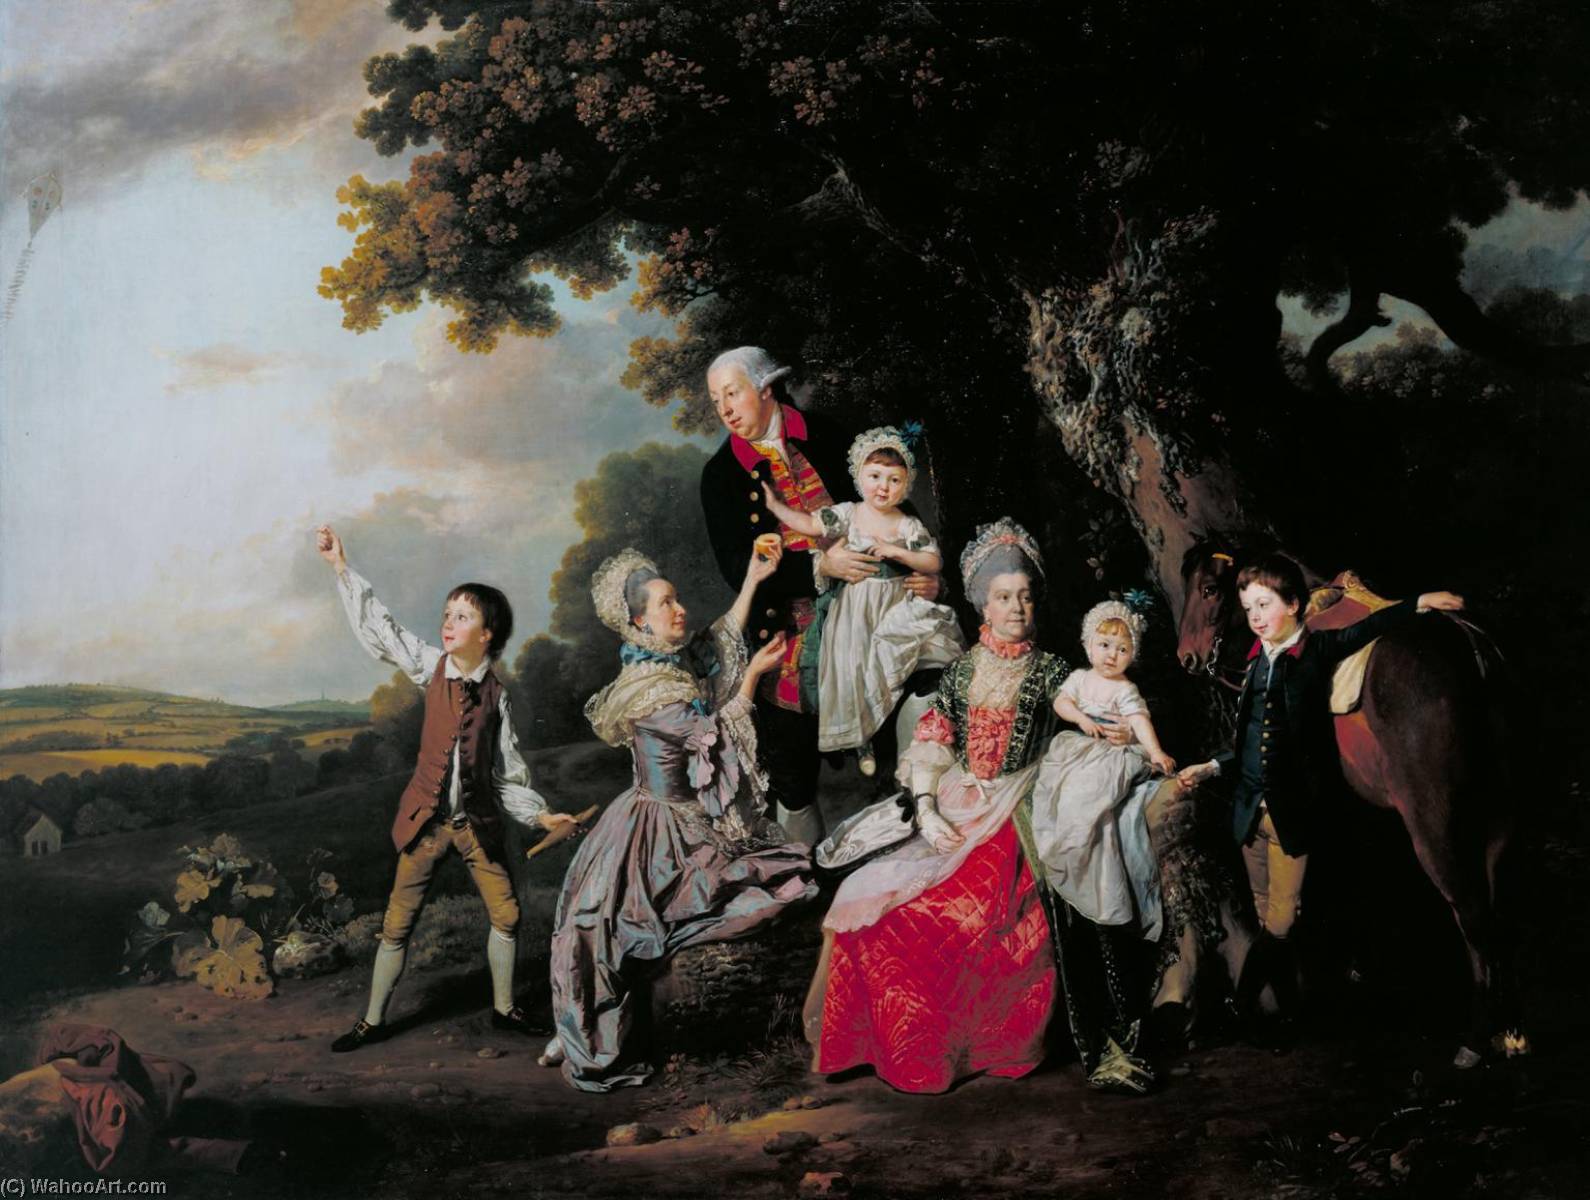 WikiOO.org - Encyclopedia of Fine Arts - Maleri, Artwork Johann Zoffany - The Bradshaw Family